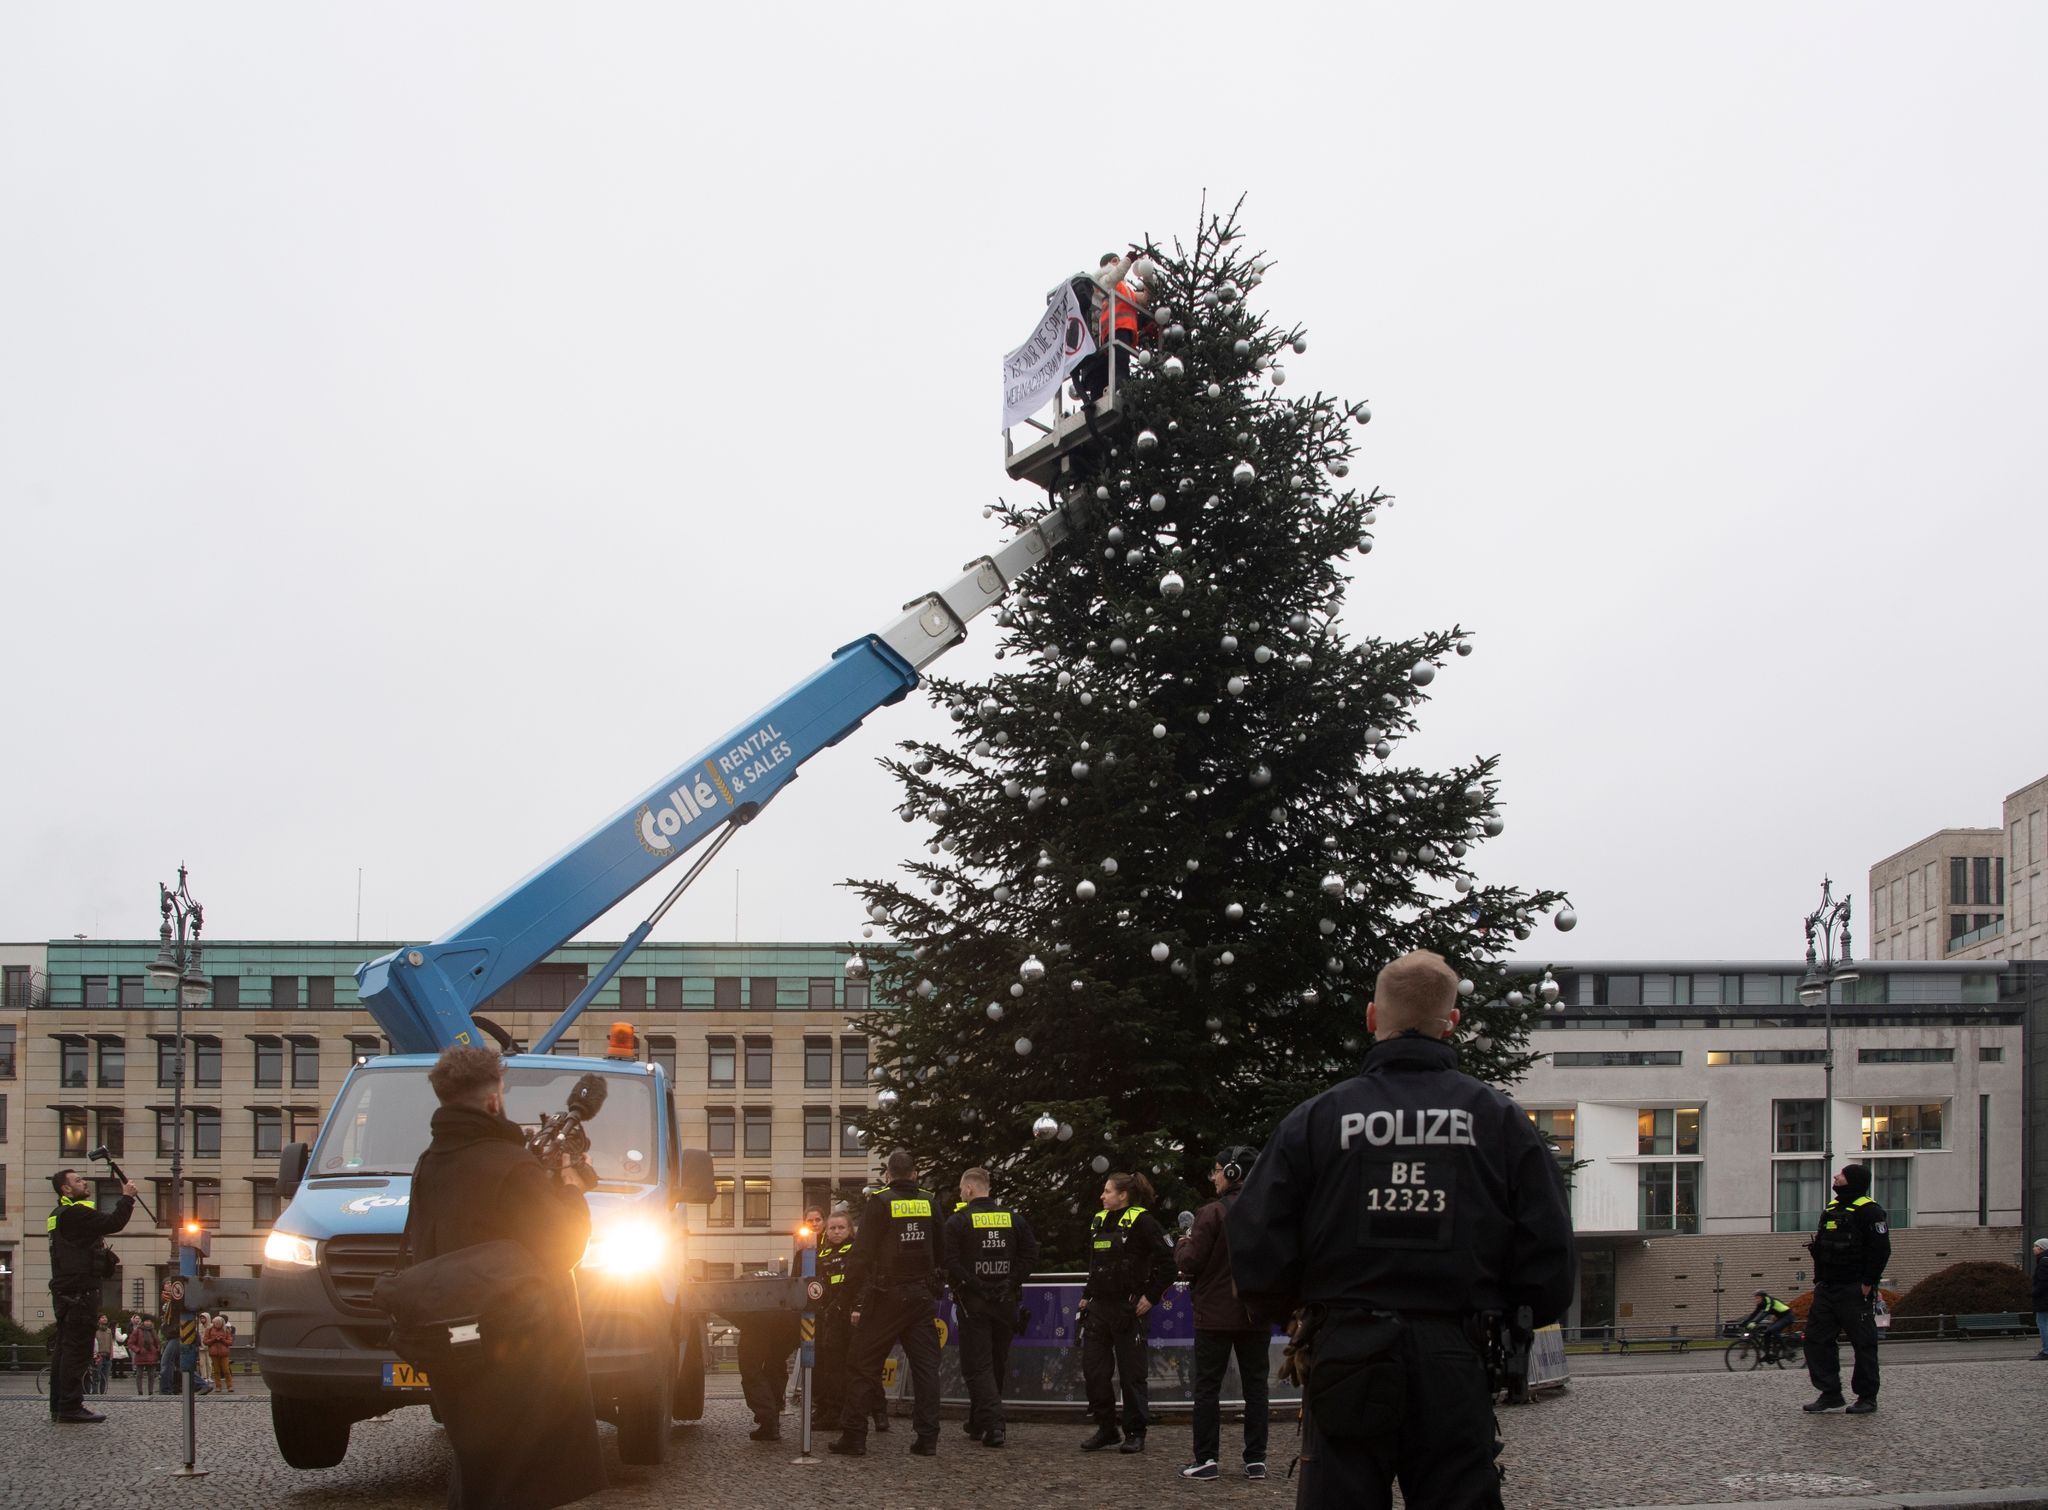 "Es ist nur die Spitze des Weihnachtsbaums" steht auf dem Transparent der Aktivisten der "Letzten Generation".